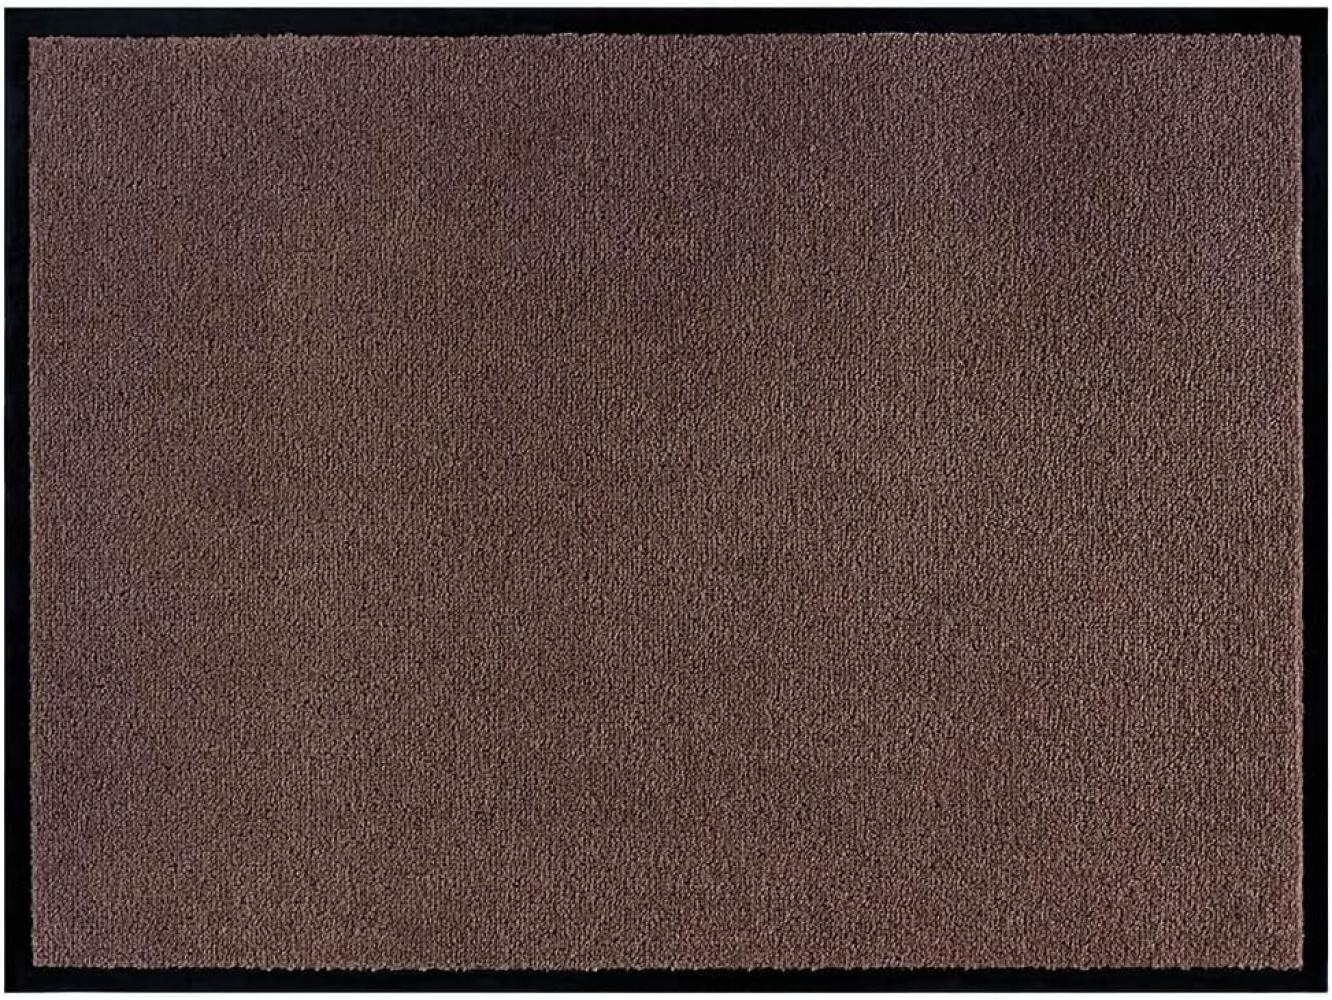 Teppich Boss waschbare In- & Outdoor Fußmatte Uni einfarbig - braun - 80x120x0,7cm Bild 1